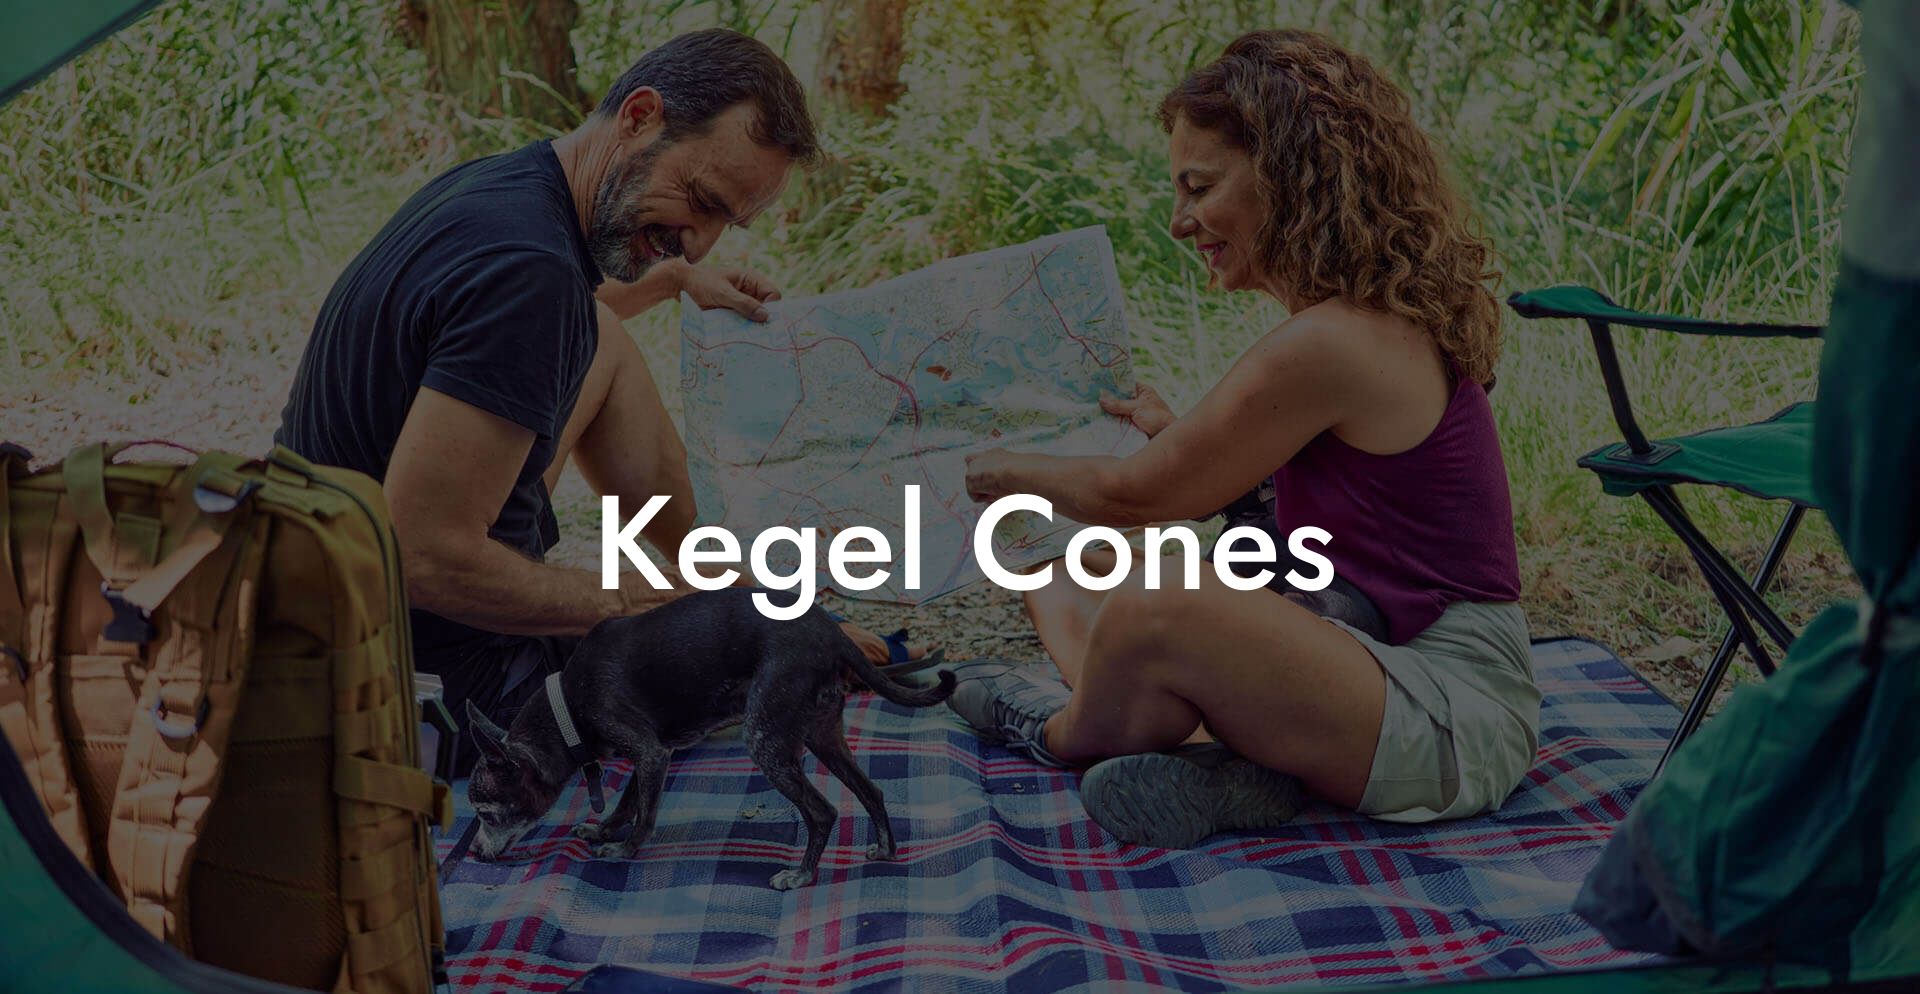 Kegel Cones